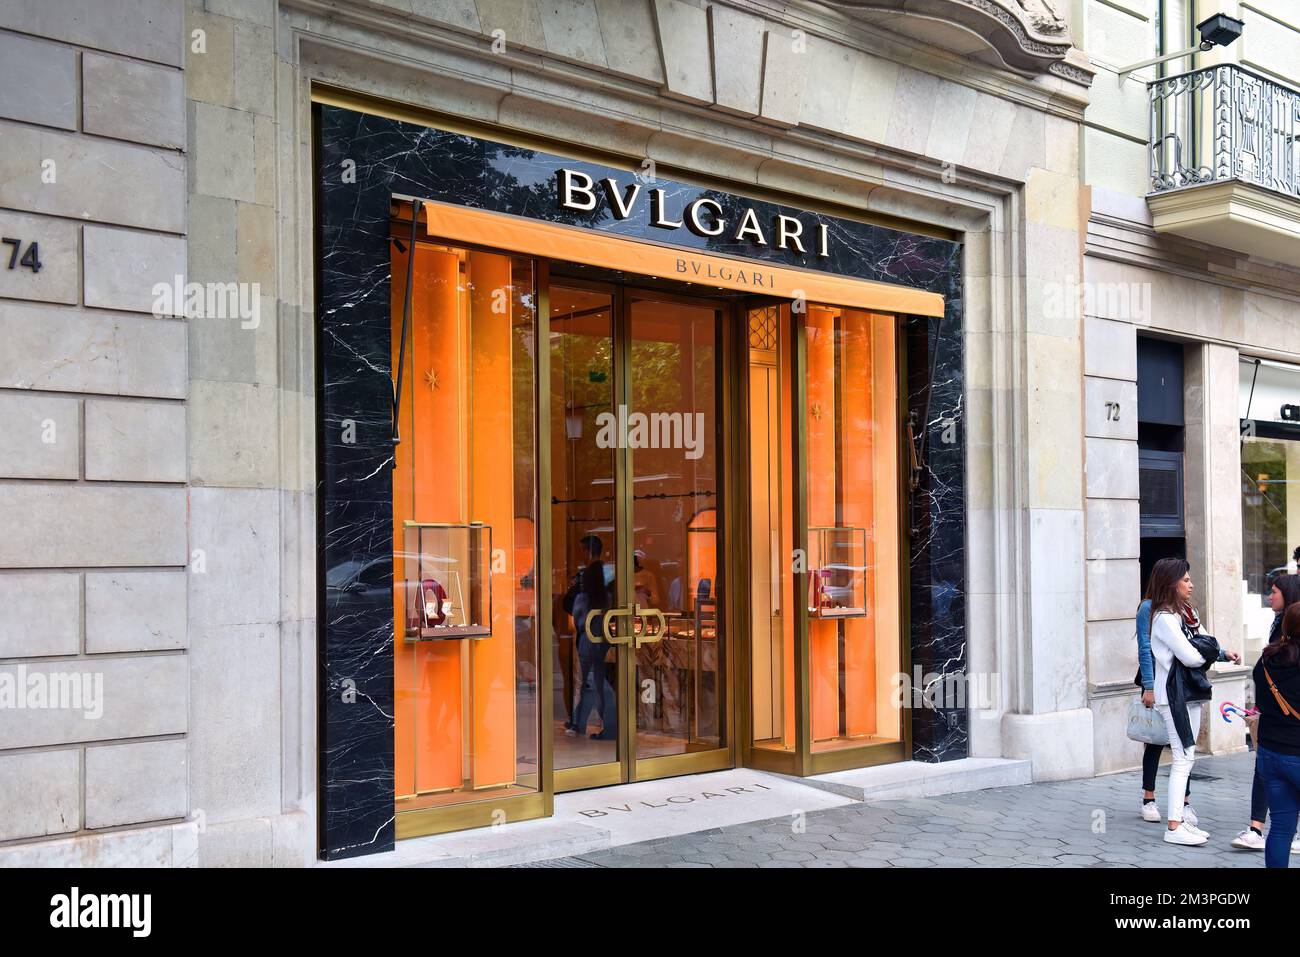 Barcellona, Spagna - 5 maggio 2018: Bulgari, a marchio BVLGARI, negozio sul Passeig de Gracia, è una casa italiana di moda di lusso conosciuta per i suoi gioielli, Foto Stock